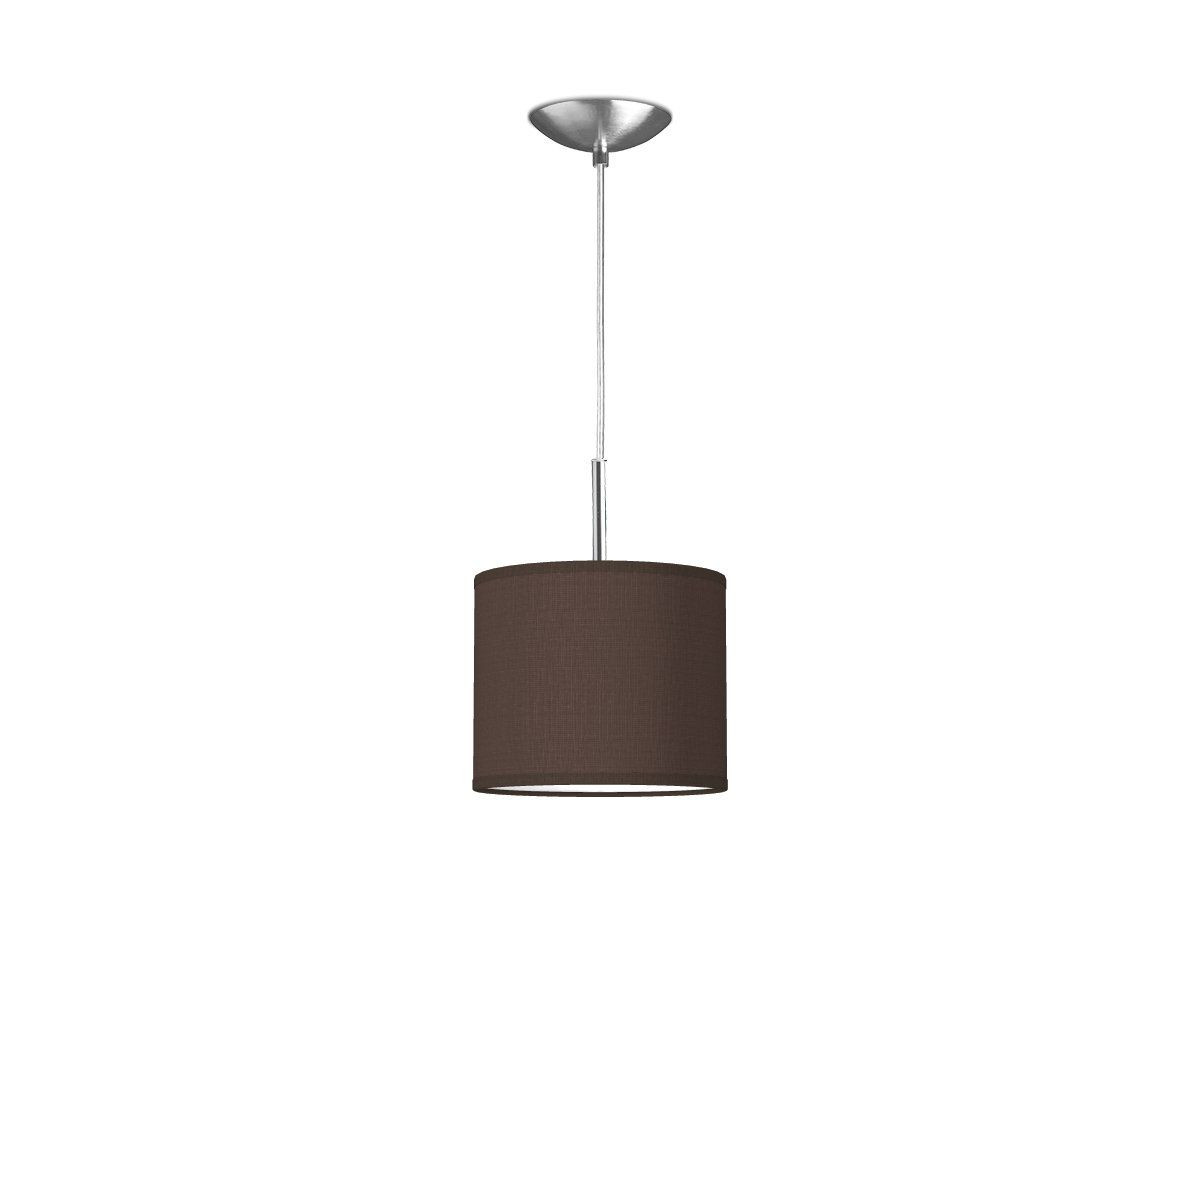 Light depot - hanglamp tube deluxe bling Ø 20 cm - bruin - Outlet